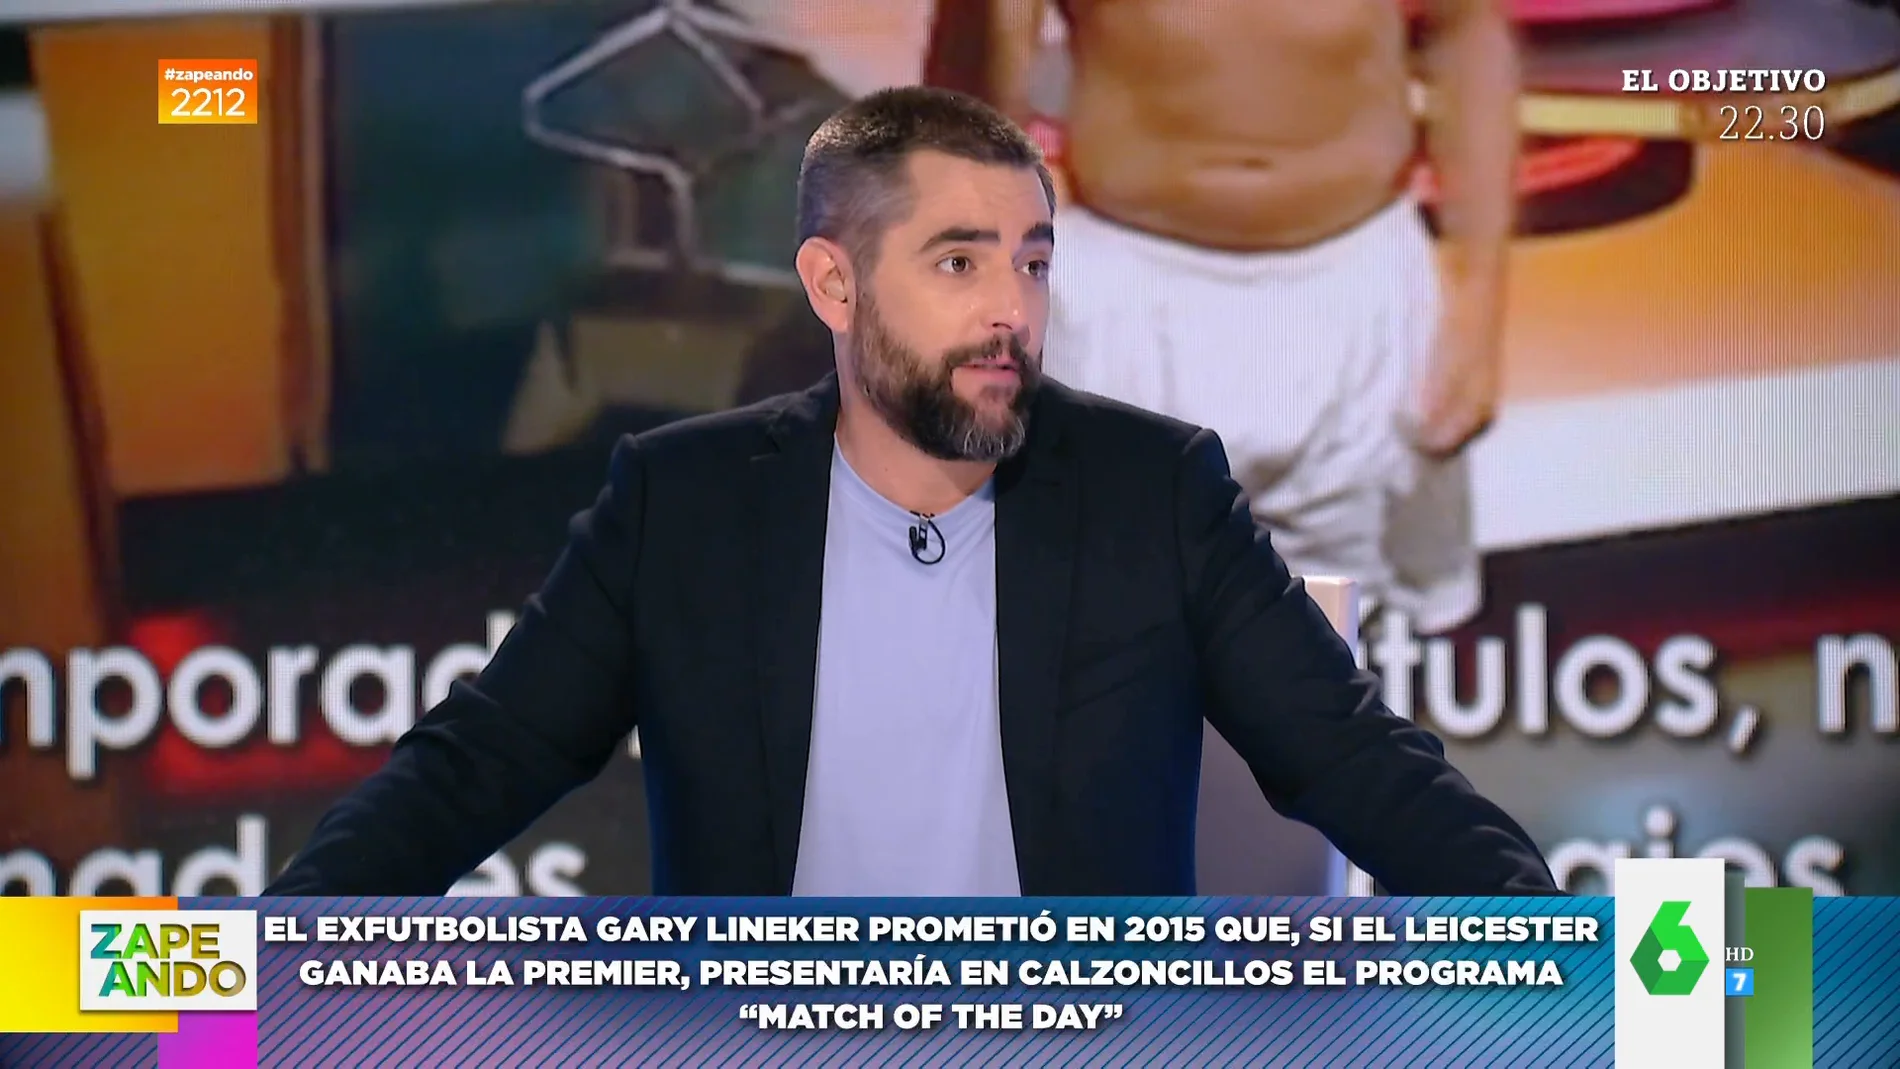 Dani Mateo promete que si el Rayo Vallecano se mete en Europa League presentará Zapeando en calzoncillos: "La he liado"